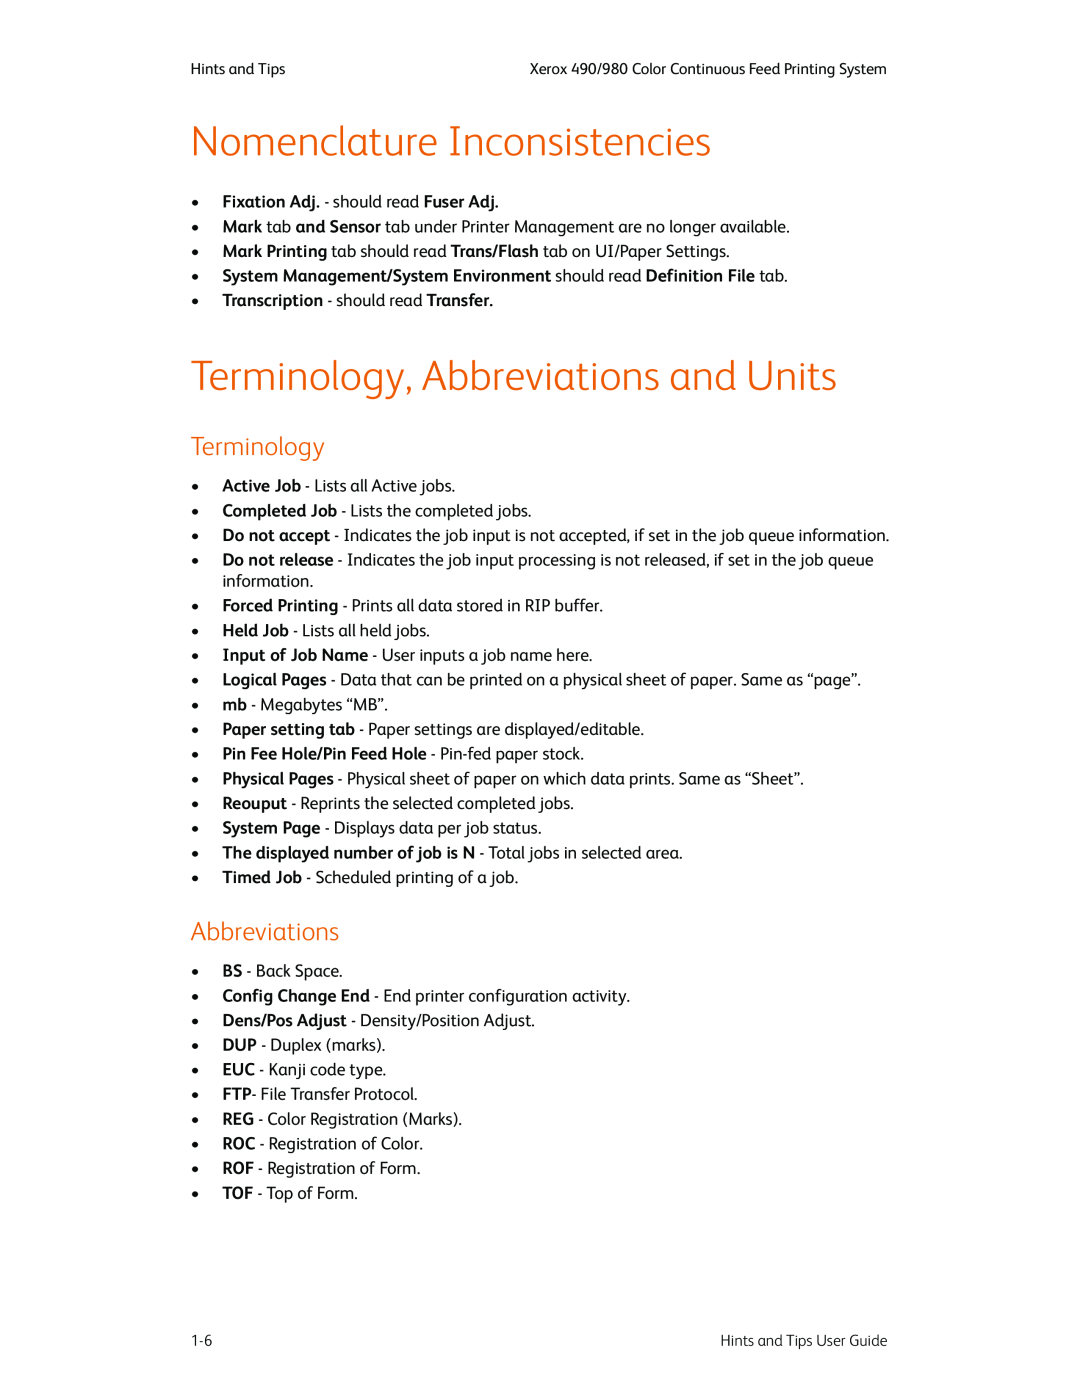 Xerox 980 manual Nomenclature Inconsistencies, Terminology, Abbreviations and Units, Fixation Adj. - should read Fuser Adj 